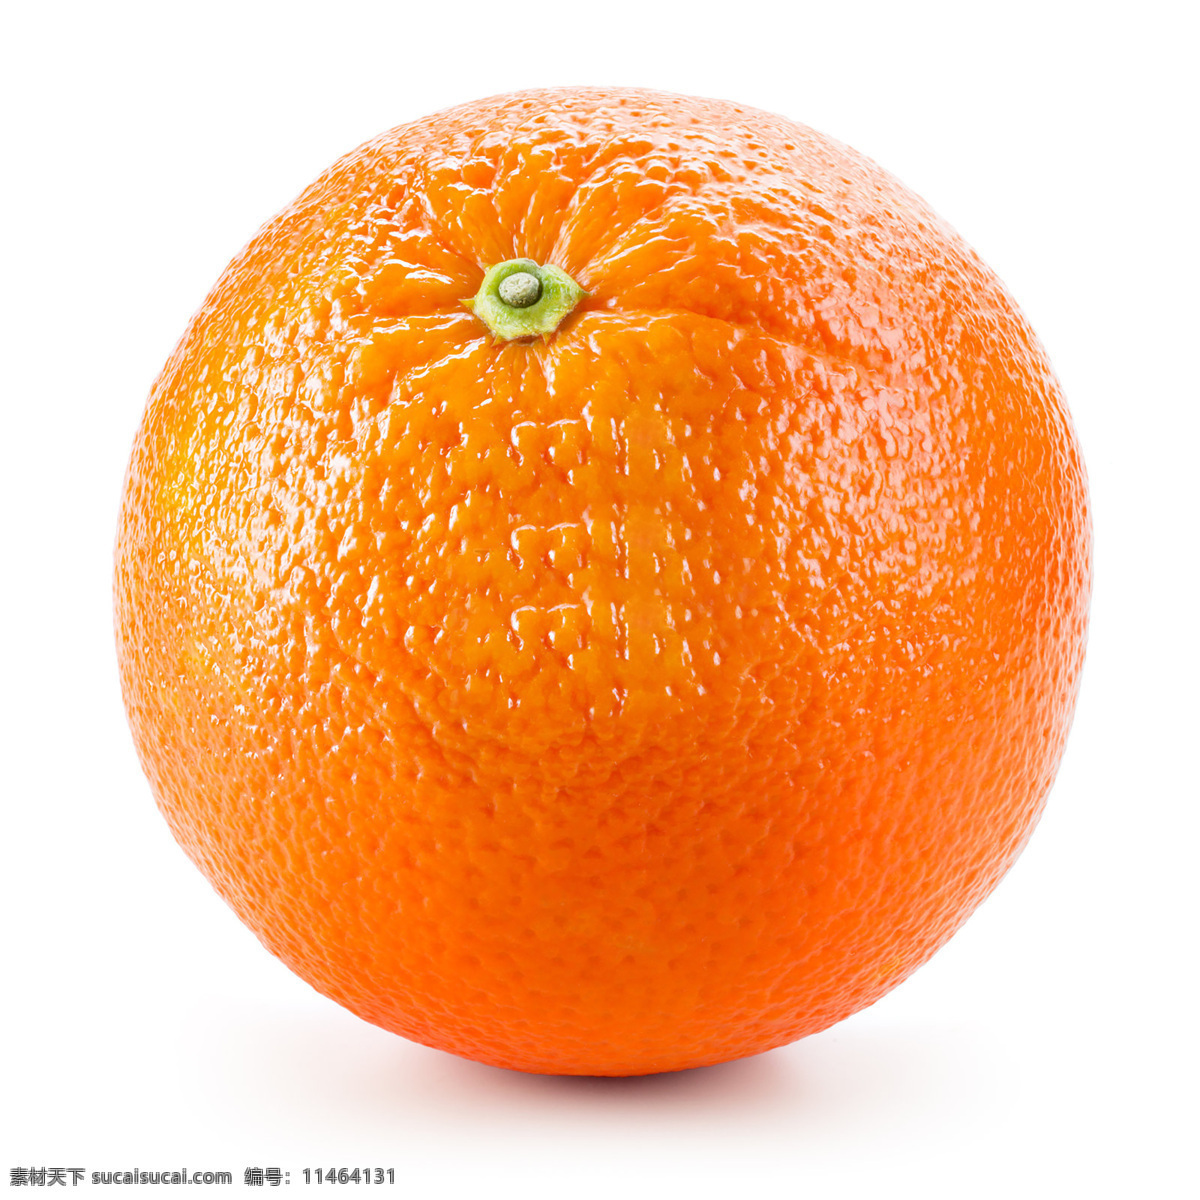 橙子 拍摄 香橙 白色背景 橙色 健康食物 抗氧化物 水果 柑橘 叶子 食品 有机食品 切块 生食 甜食 生物世界